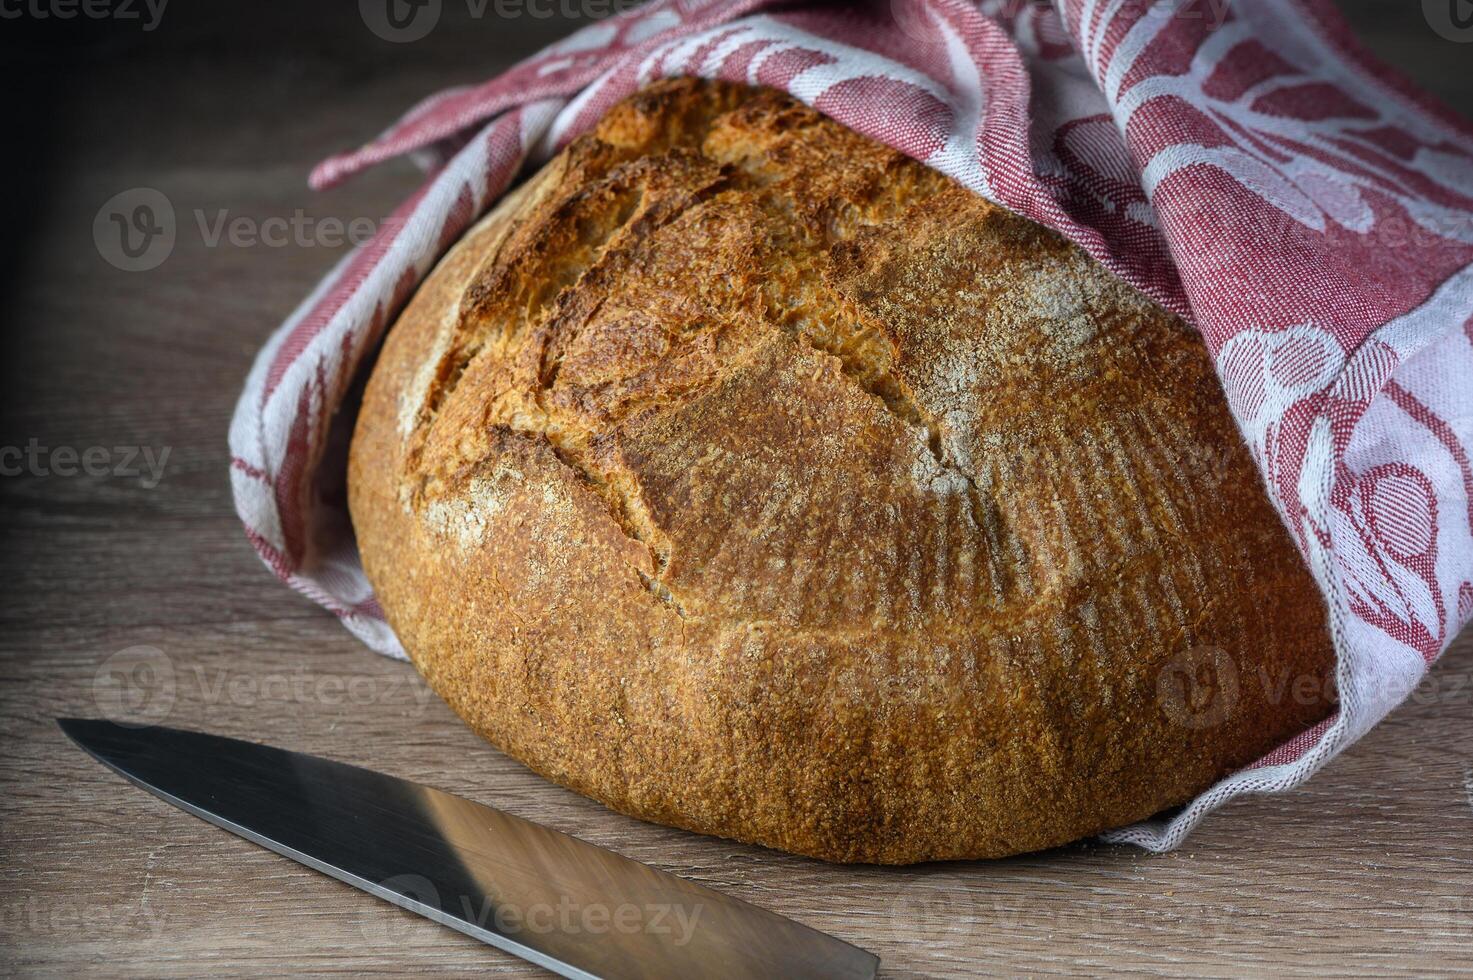 heerlijk eigengemaakt geheel graan brood vers van de oven 3 foto